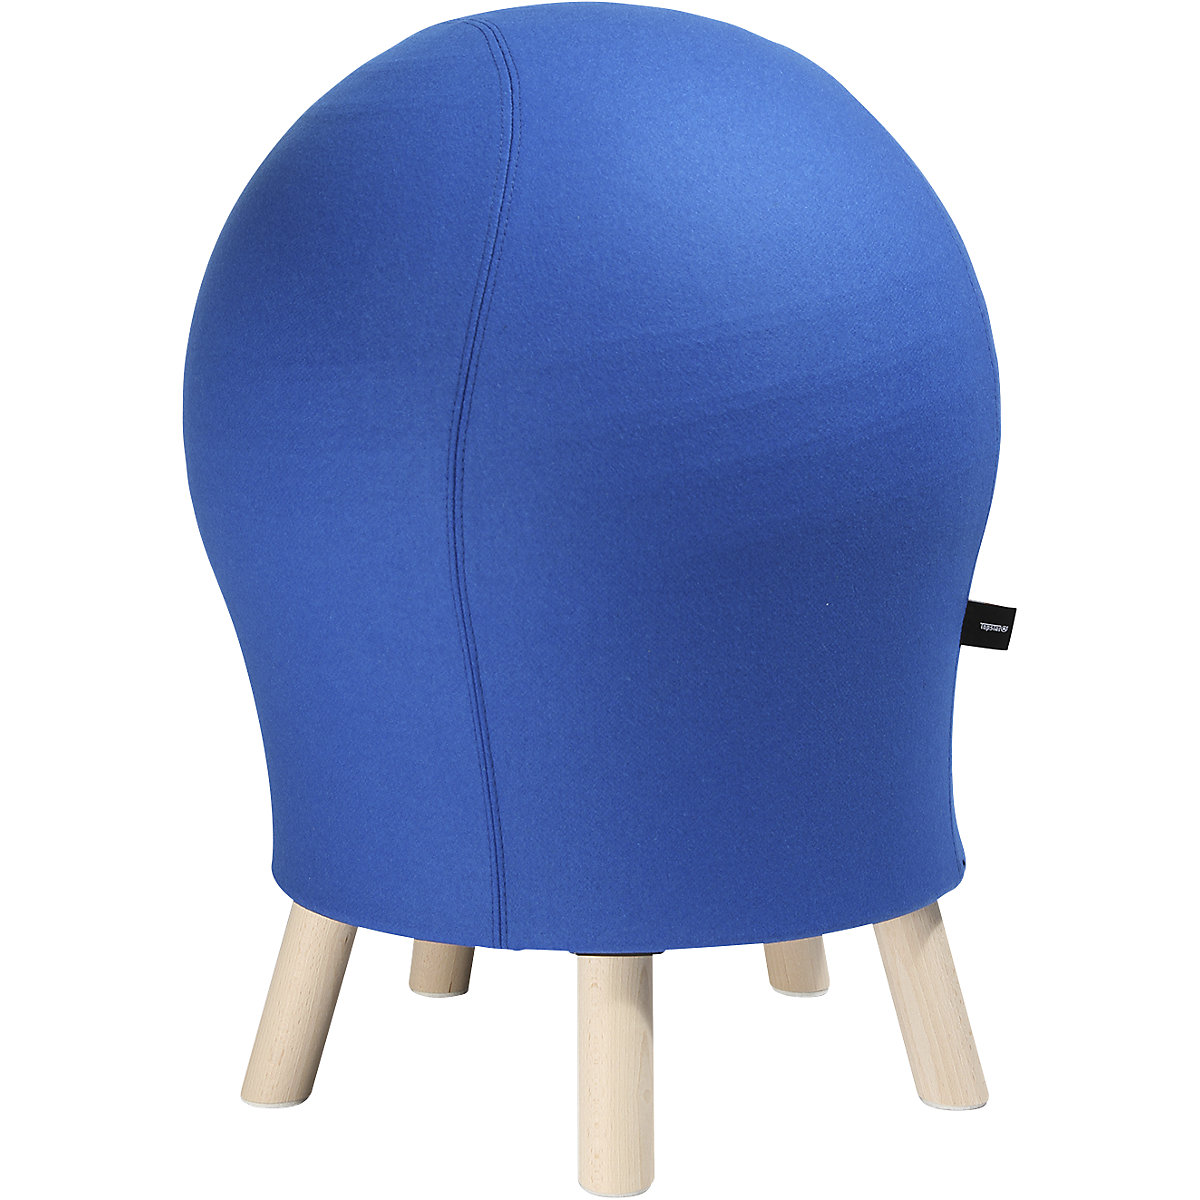 Fitness stolička SITNESS 5 ALPINE – Topstar, výška sedáku cca 620 mm, potah modrý-5